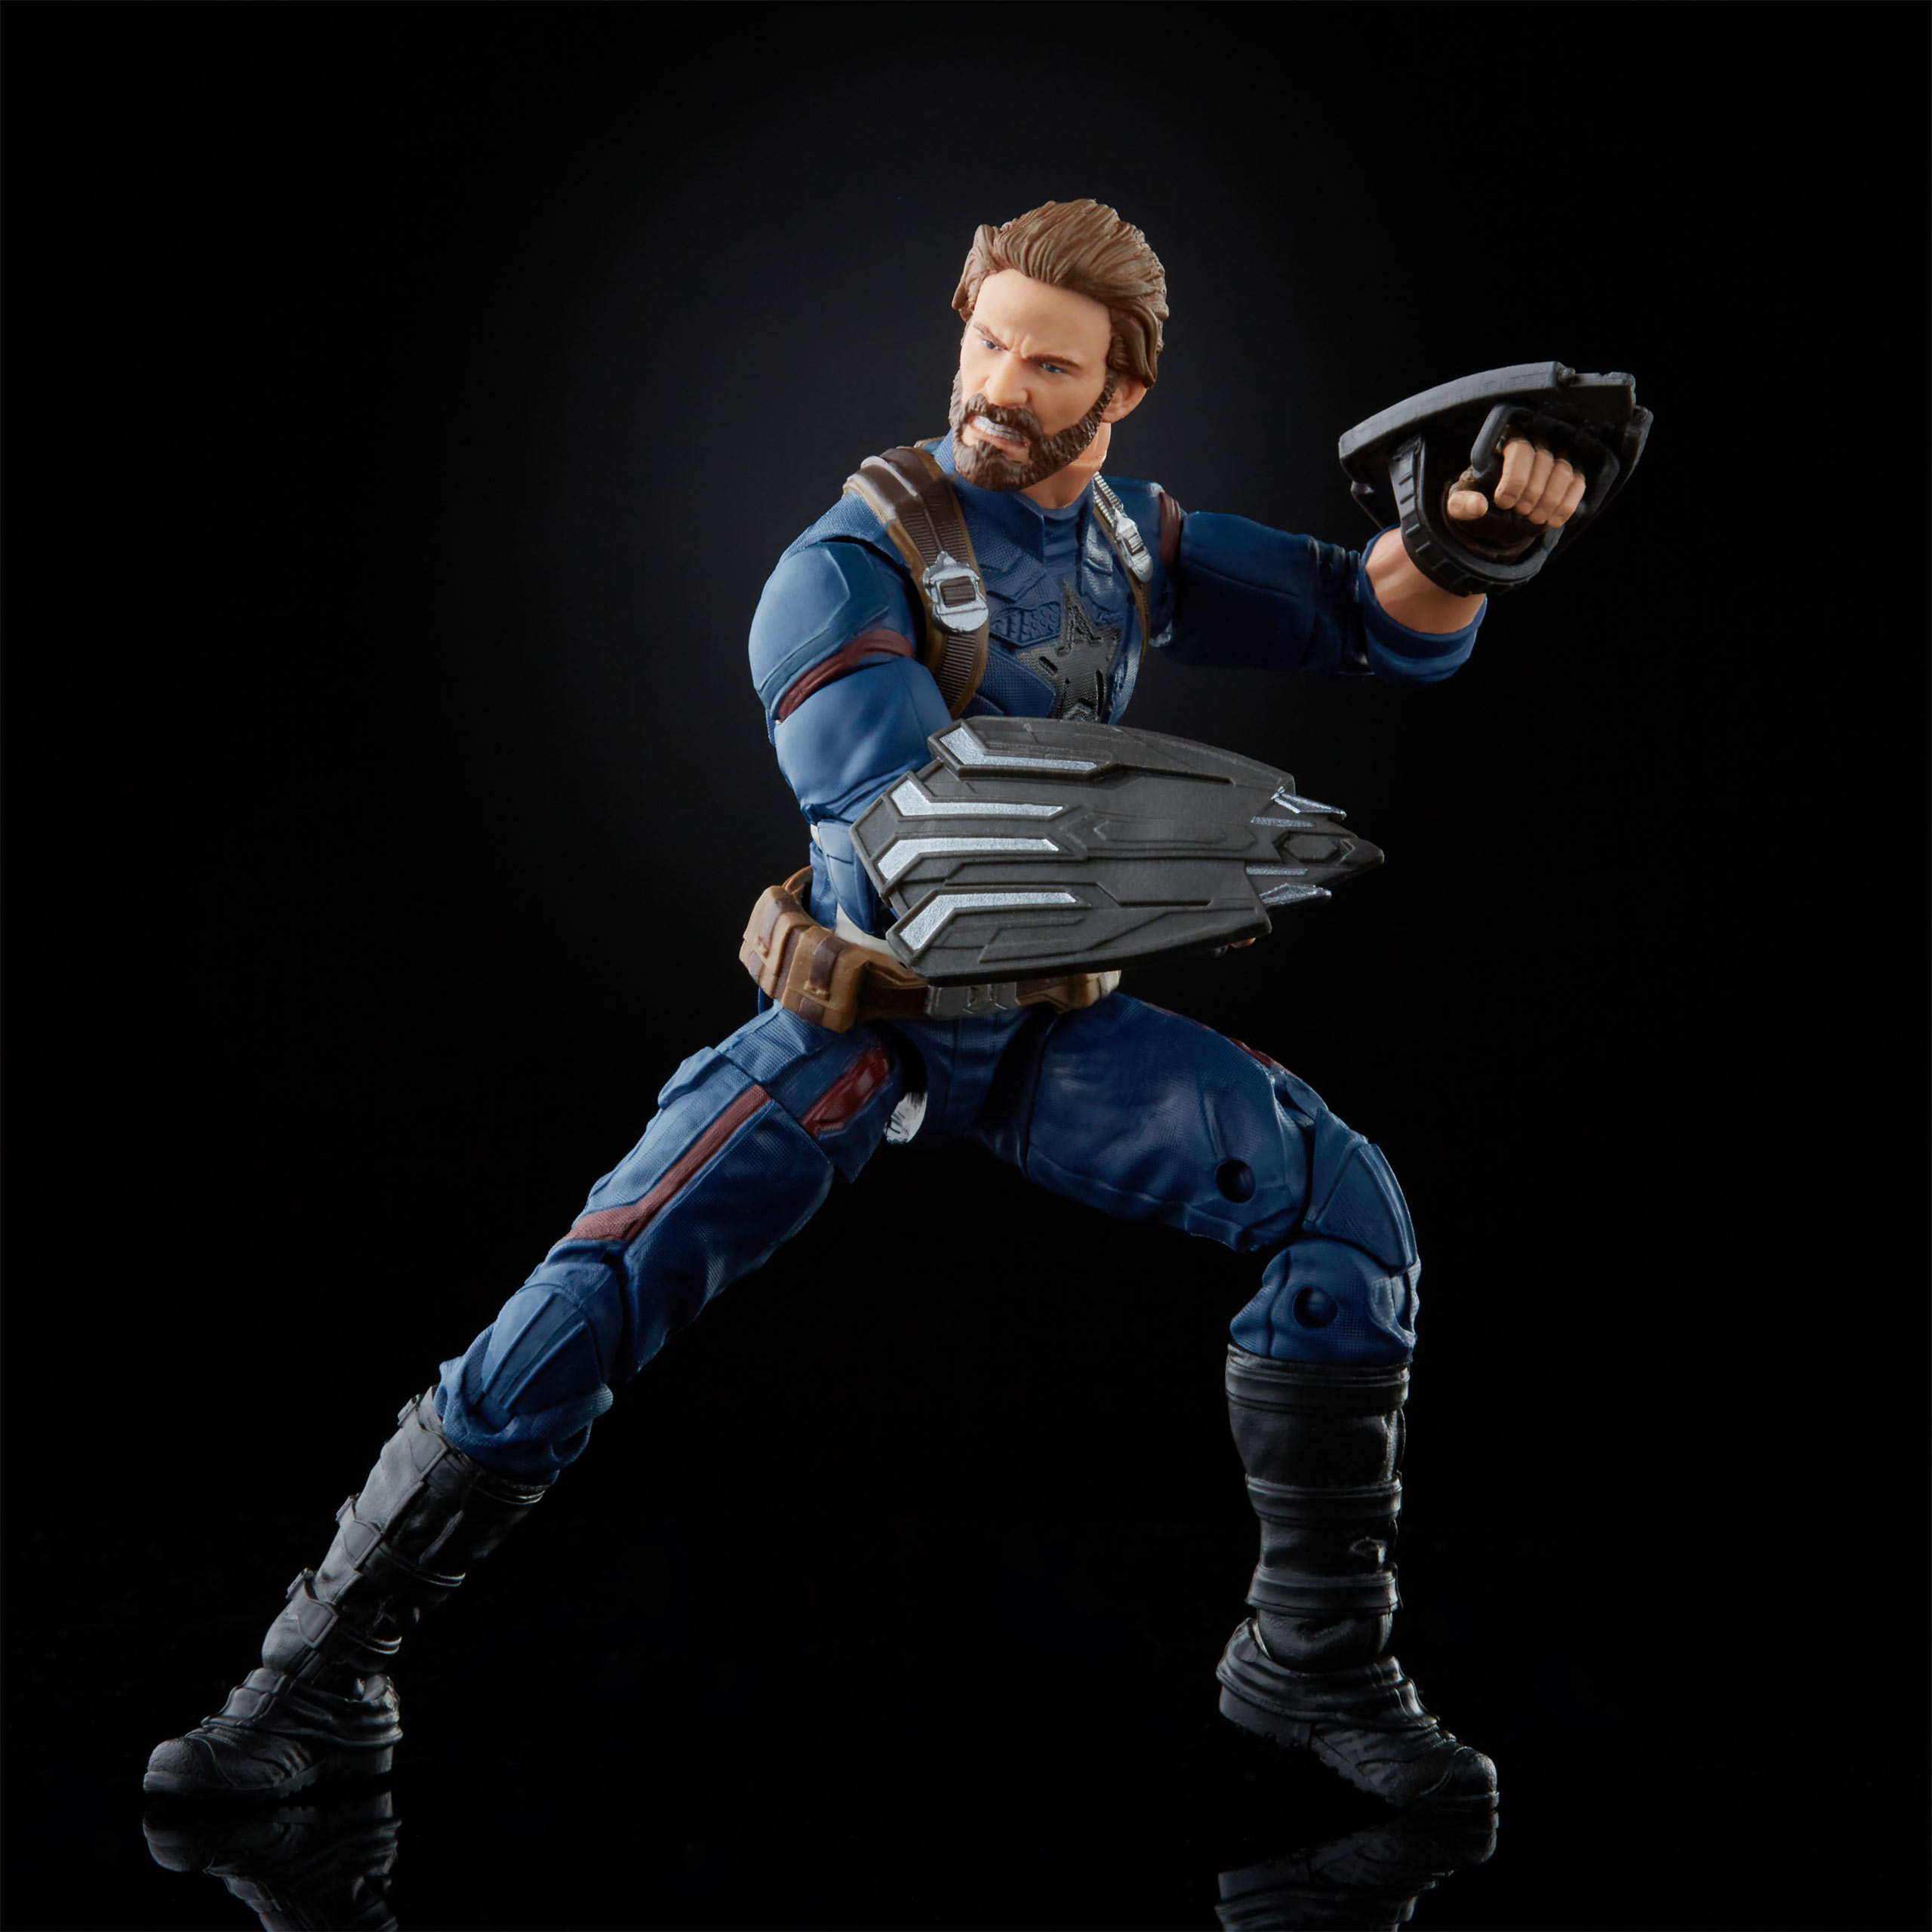 Avengers - Captain America Action Figure 16.5 cm